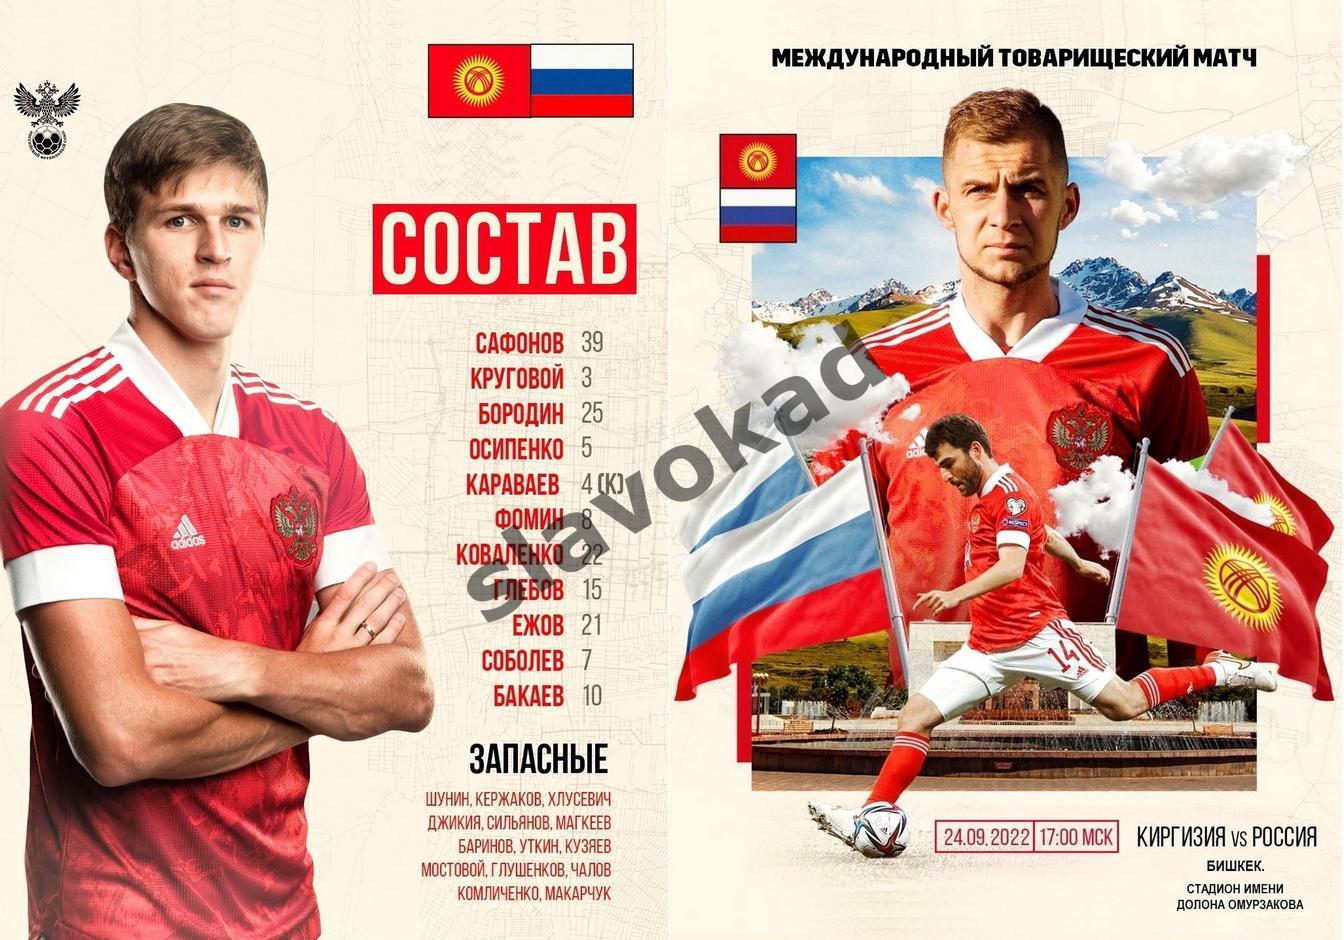 Киргизия - Россия 24.09.2022 - международный товарищеский матч 2